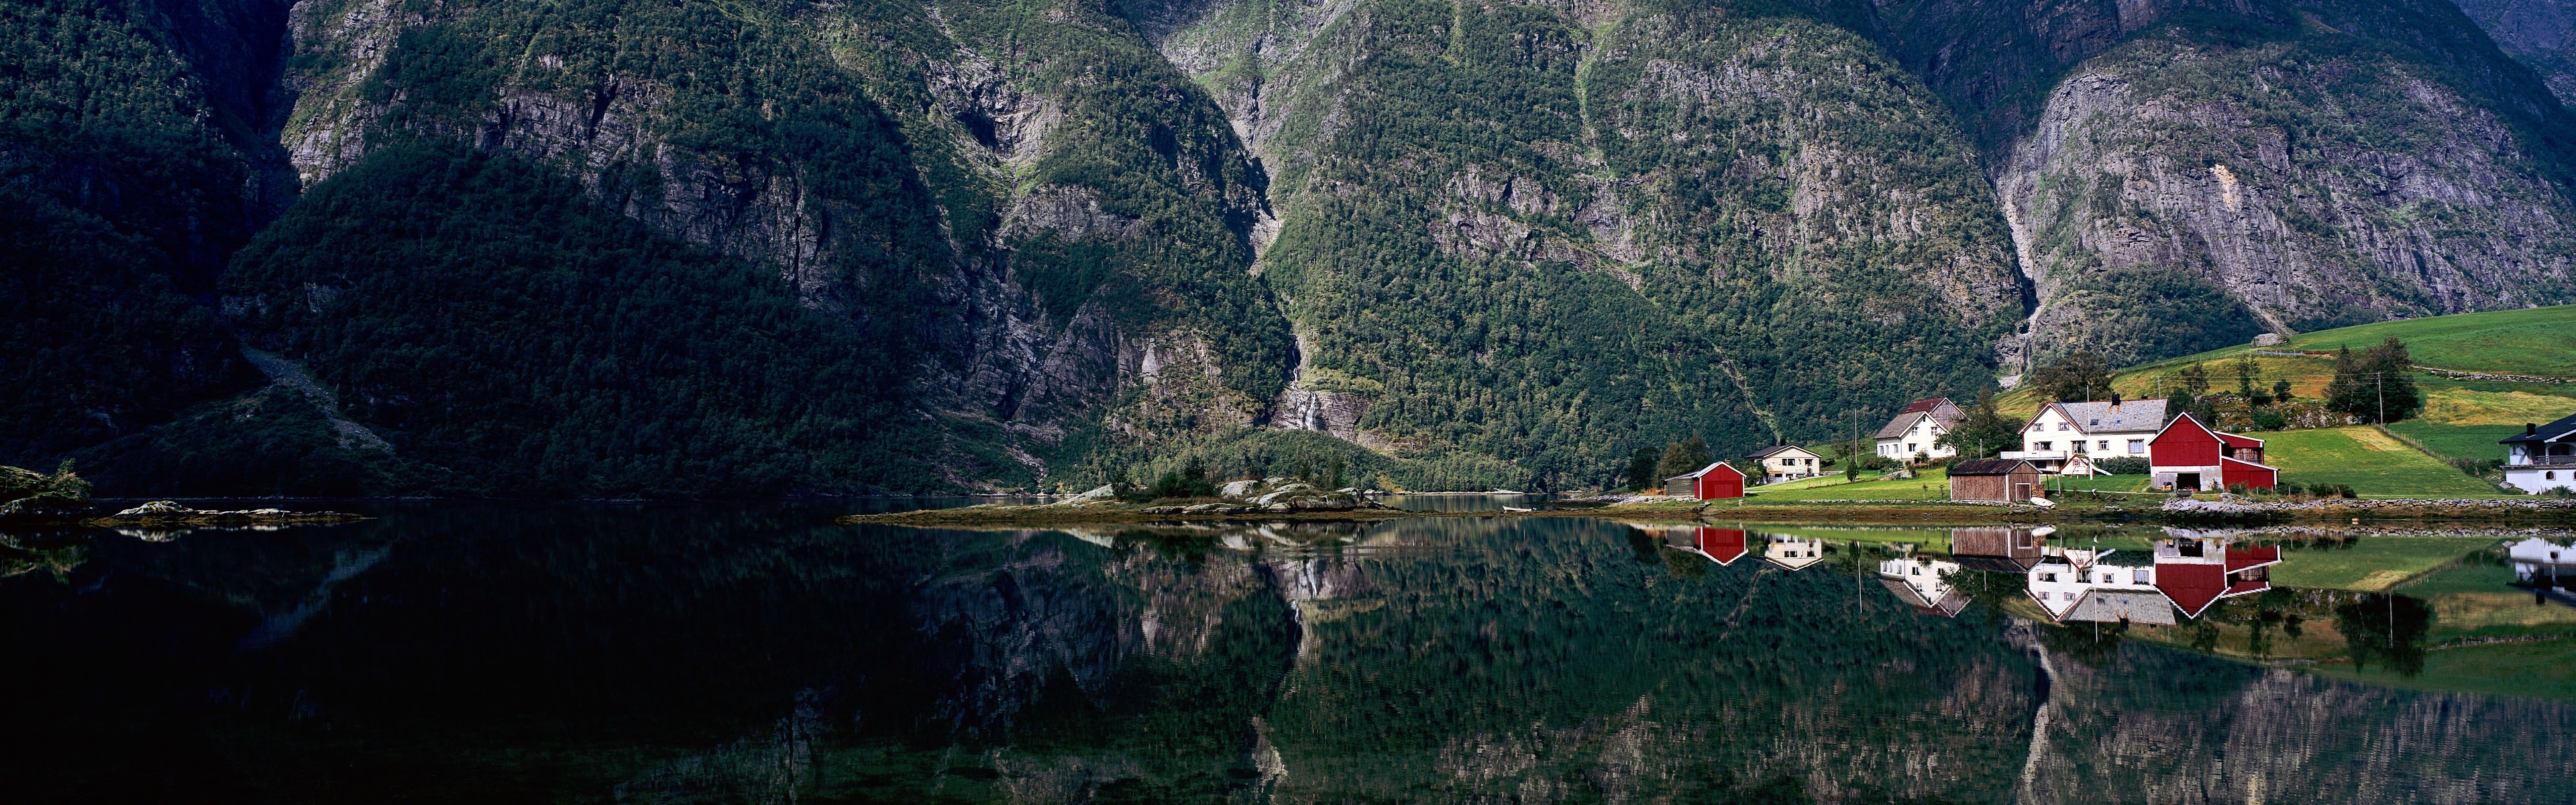 Europäische Landschaften, Windows 8 Panorama-Widescreen-Wallpaper #8 - 3840x1200